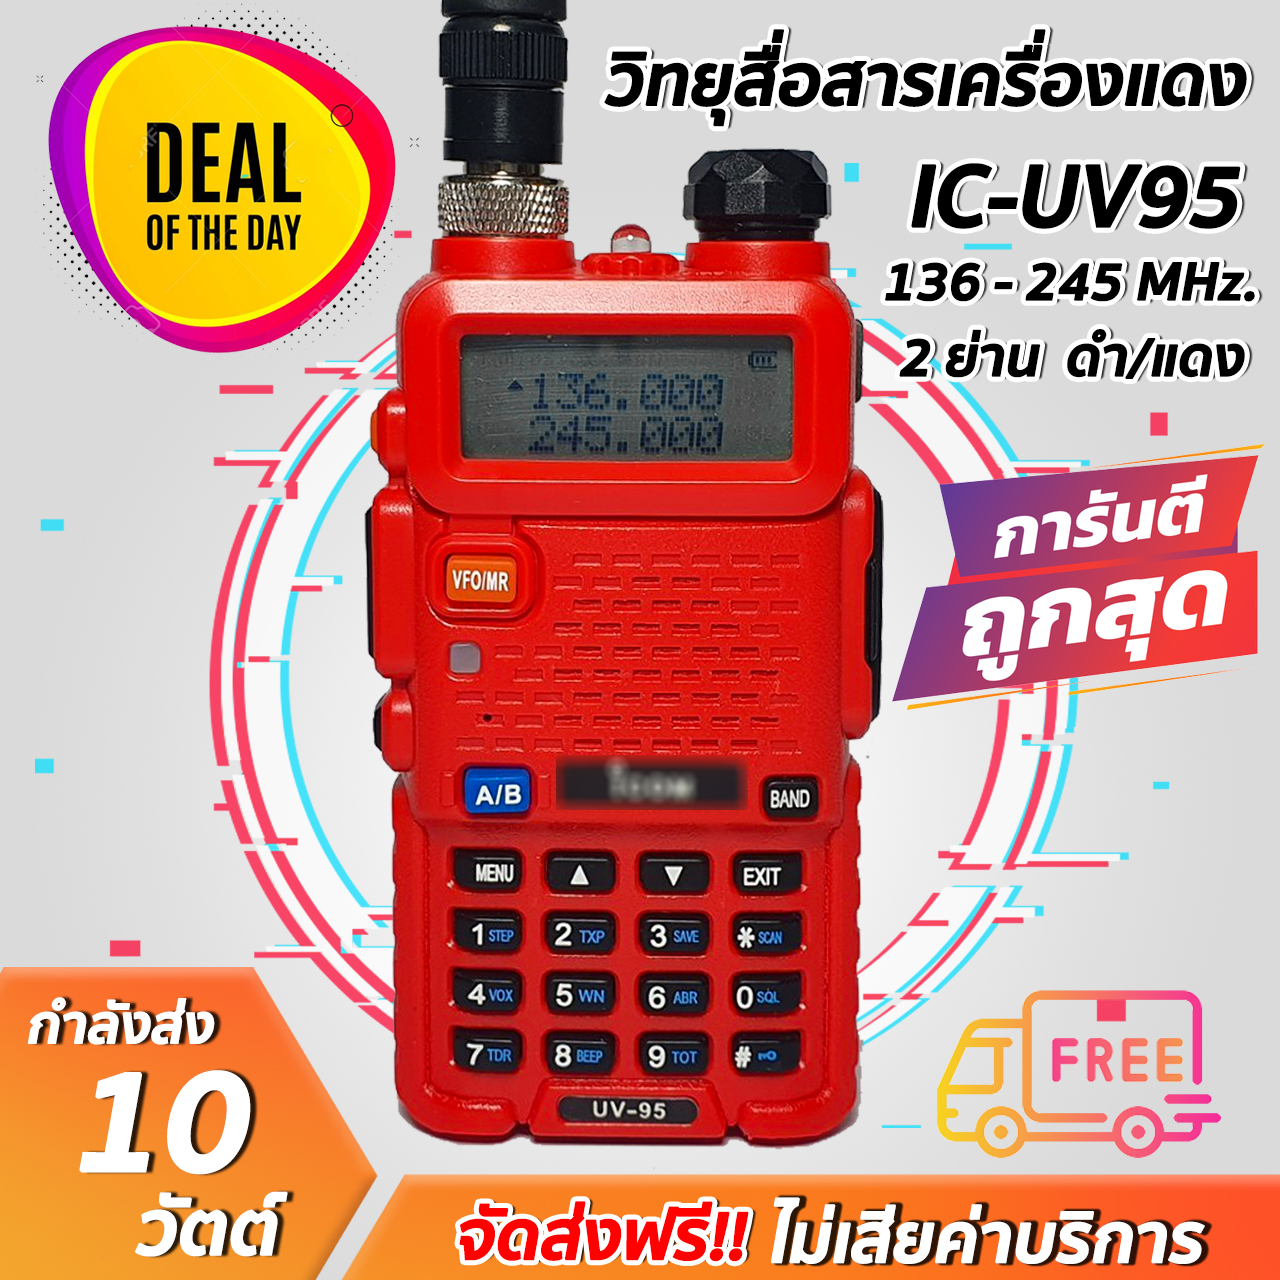 วิทยุสื่อสารเครื่องแดง IC-UV95 ใช้งาน 2 ความถี่ ดำและแดง รุ่นยอดนิยม ถูกที่สุด!! ขายราคาส่ง พร้อมรับประกันสินค้า 6 เดือน